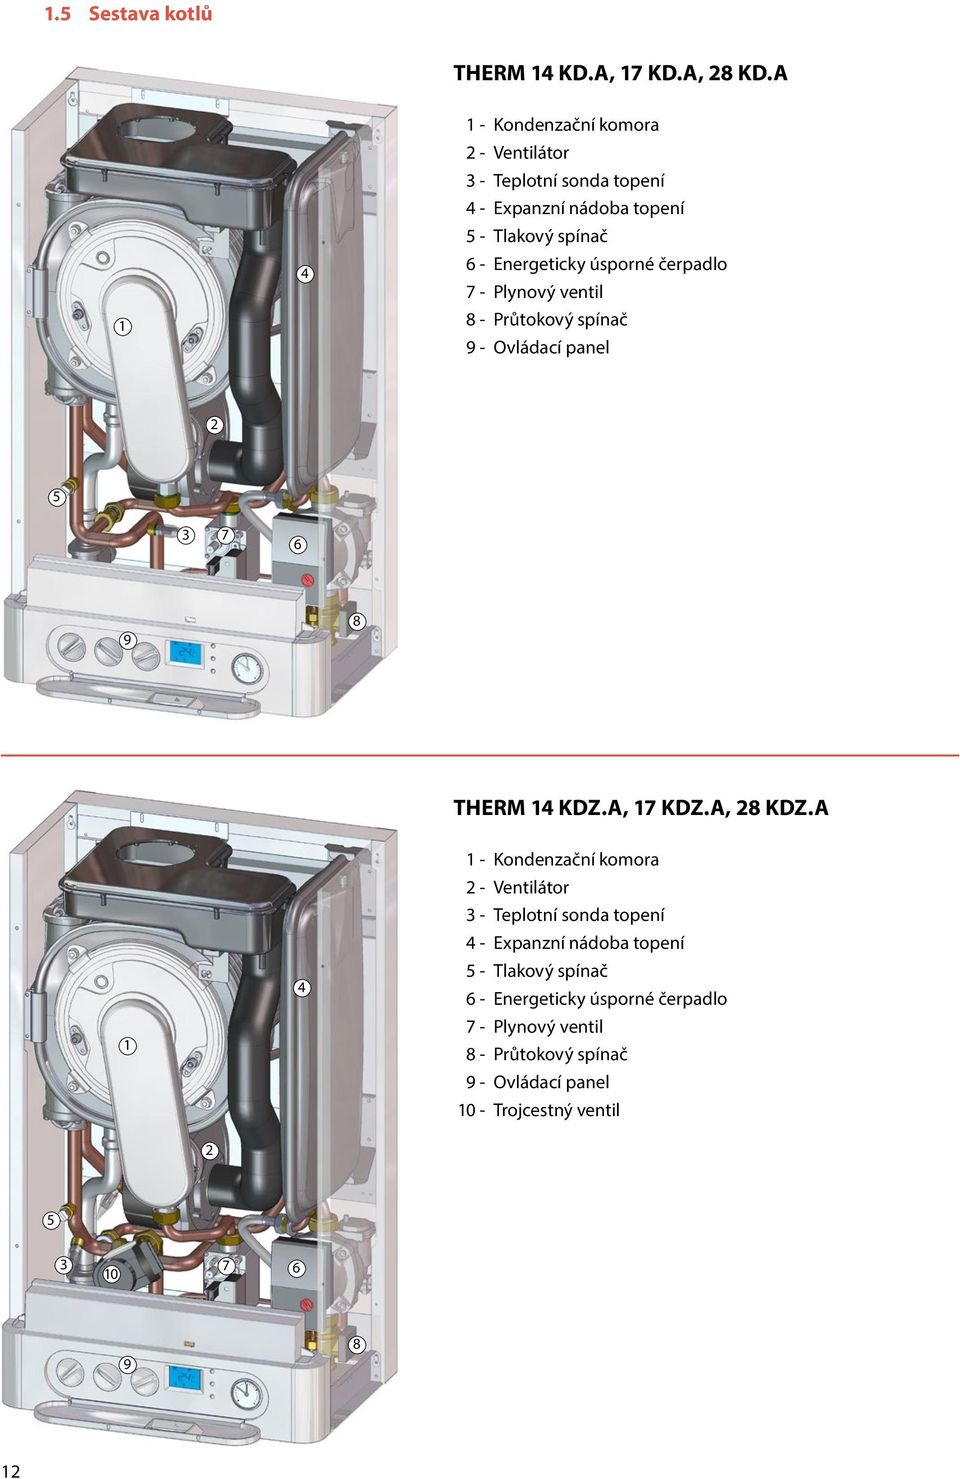 úsporné čerpadlo 7 - Plynový ventil 8 - Průtokový spínač 9 - Ovládací panel 2 5 3 7 6 9 8 THERM 14 KDZ.A, 17 KDZ.A, 28 KDZ.